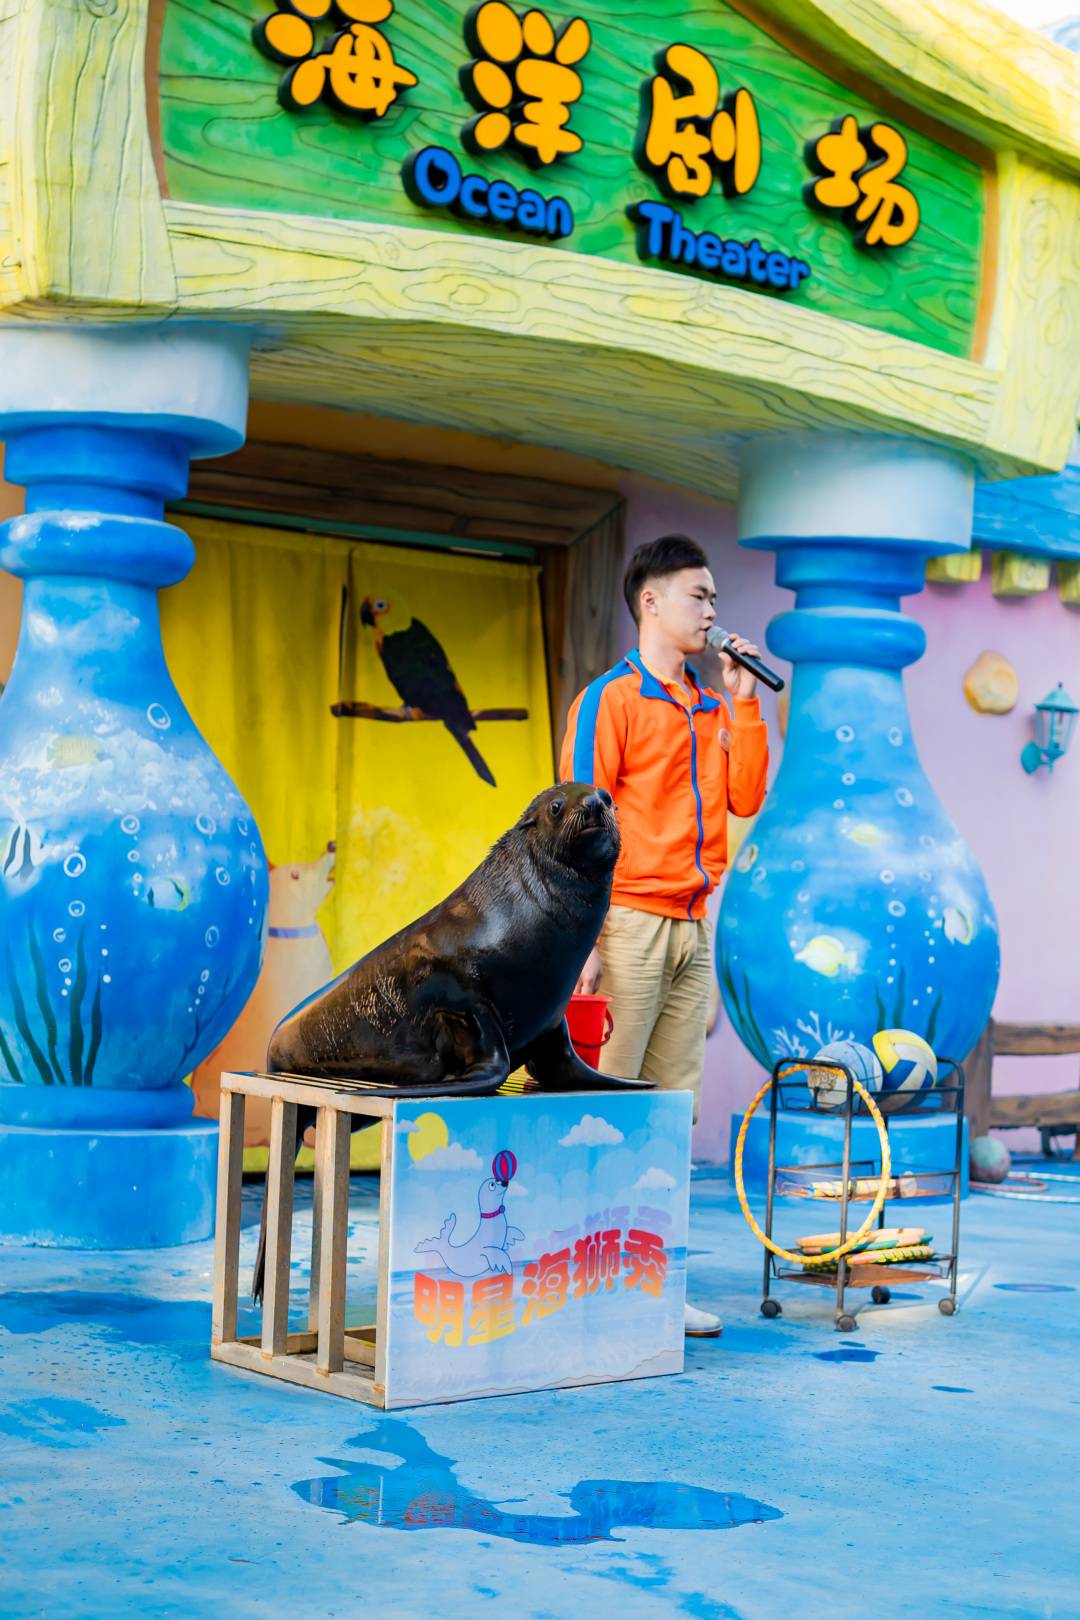 【限时特惠】广州融创欢腾国际马戏+明星动物园双人票（6月18-7月31）99元抢购